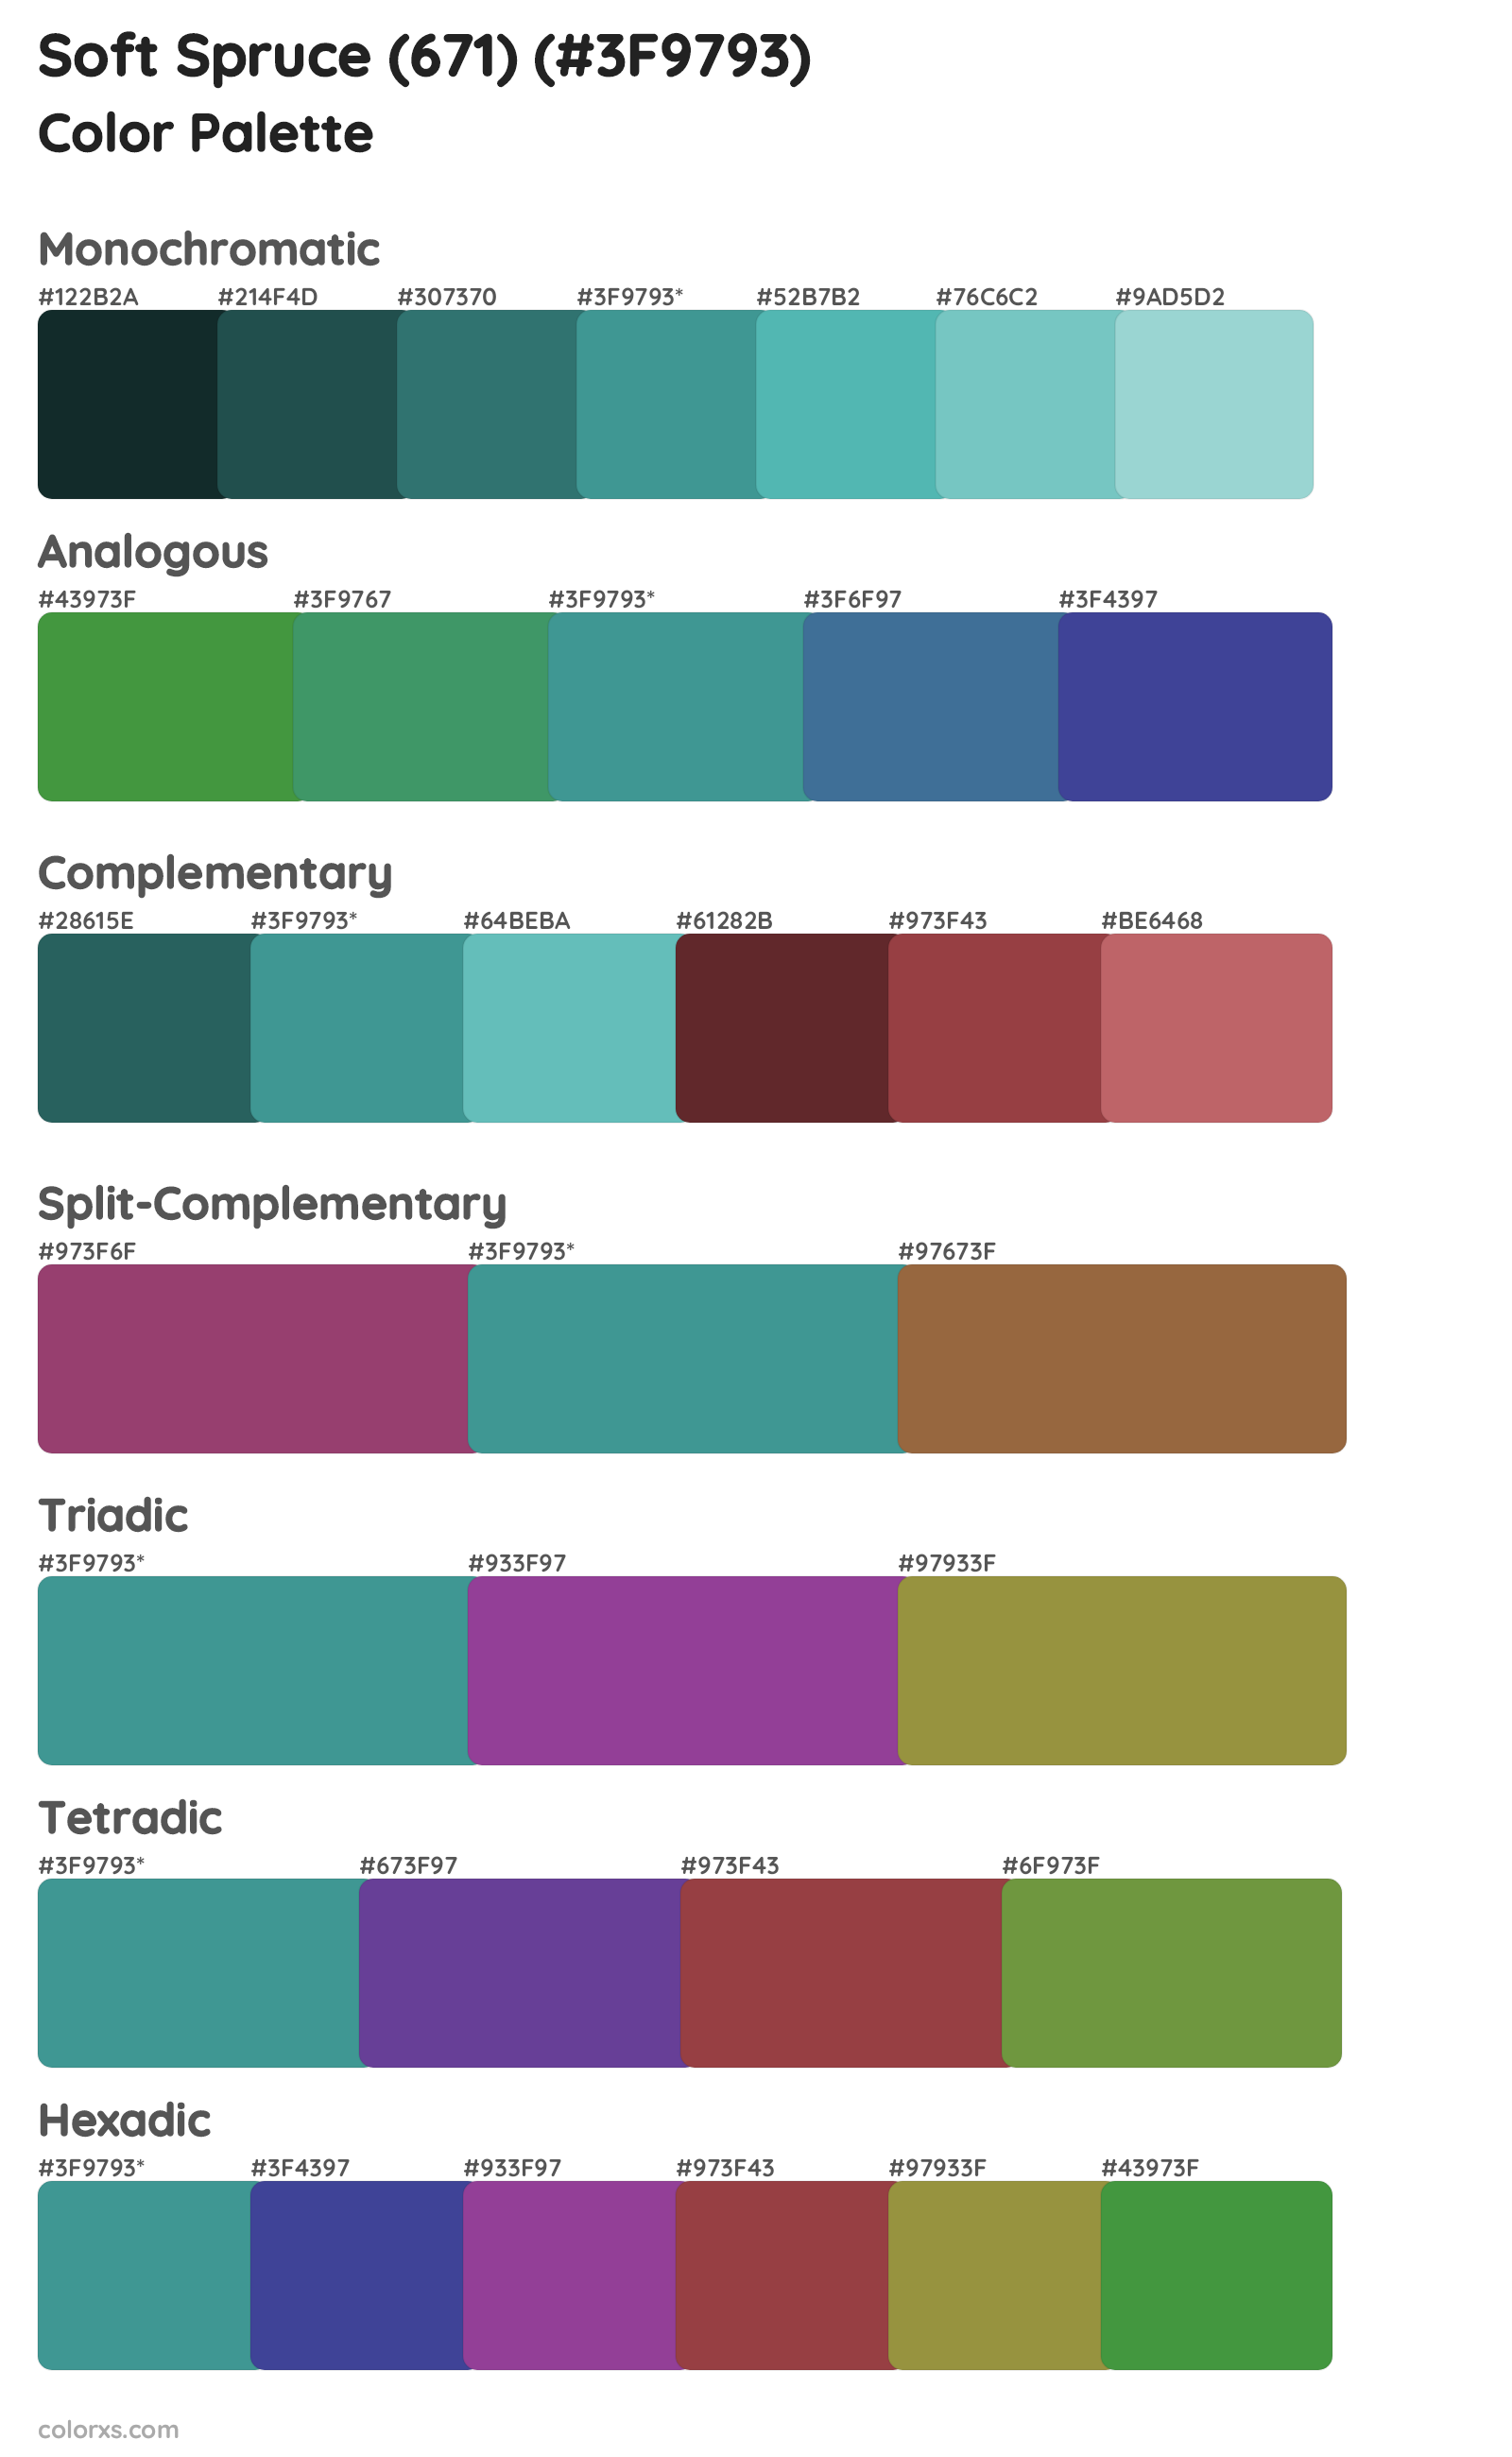 Soft Spruce (671) Color Scheme Palettes